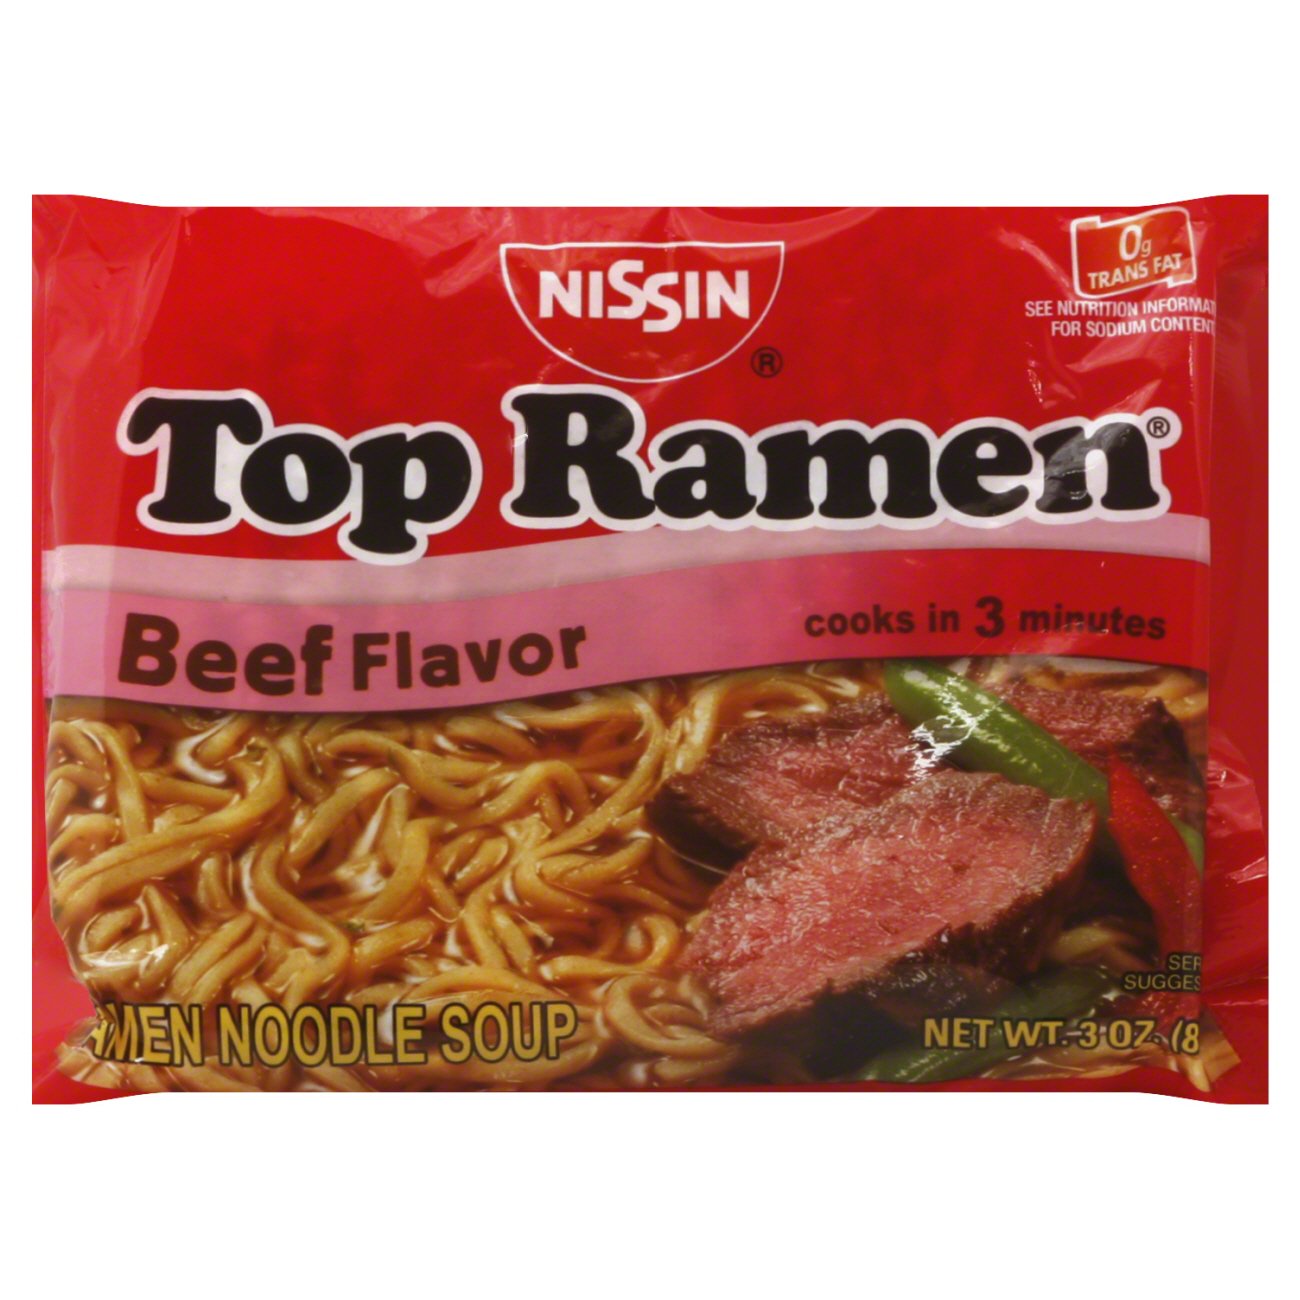 Nissin Top Ramen Beef Flavor Noodle Soup - Shop Soups & Chili at H-E-B